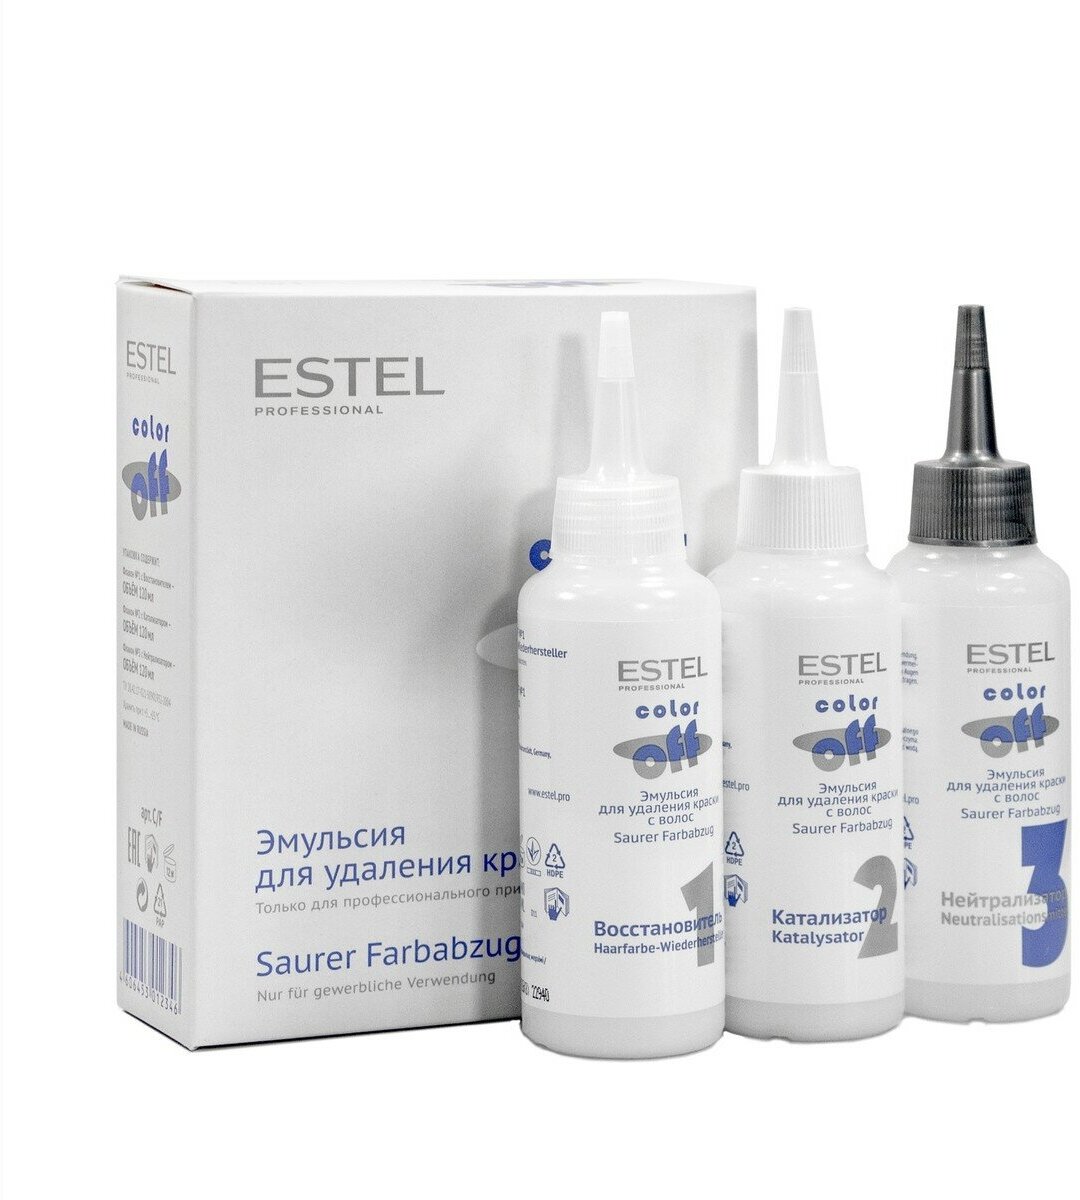 Эмульсия-смывка для удаления краски с волос COLOR OFF (3 шт.*120 мл.) Estel